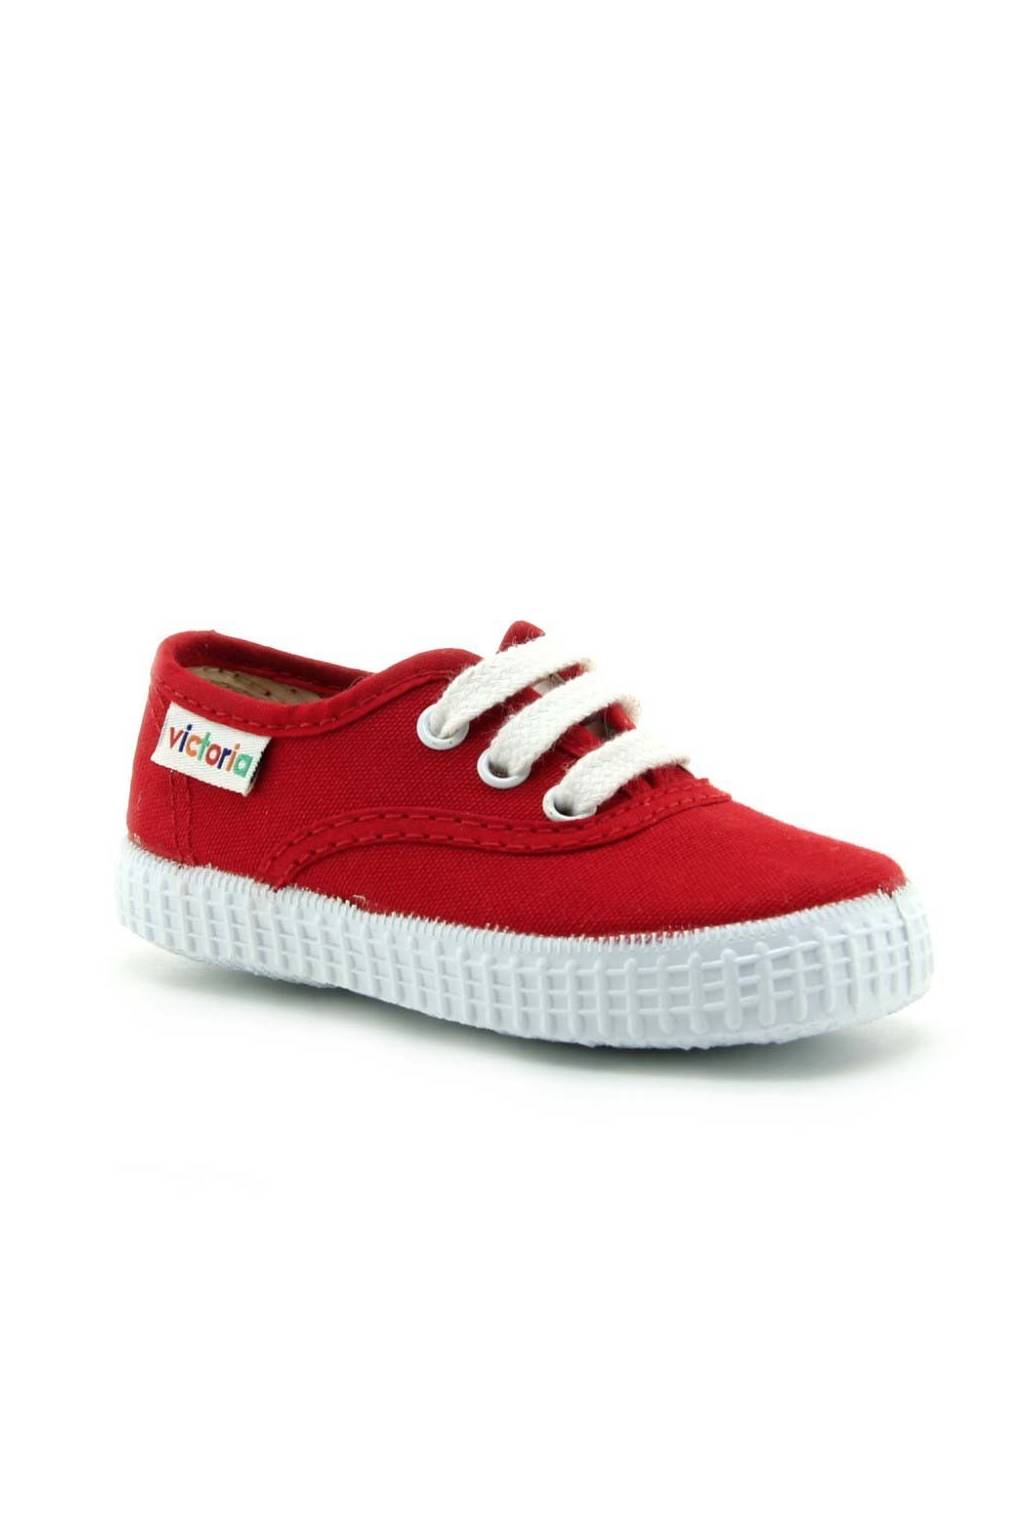 Zapatillas de niña Victoria 106613 rojo-